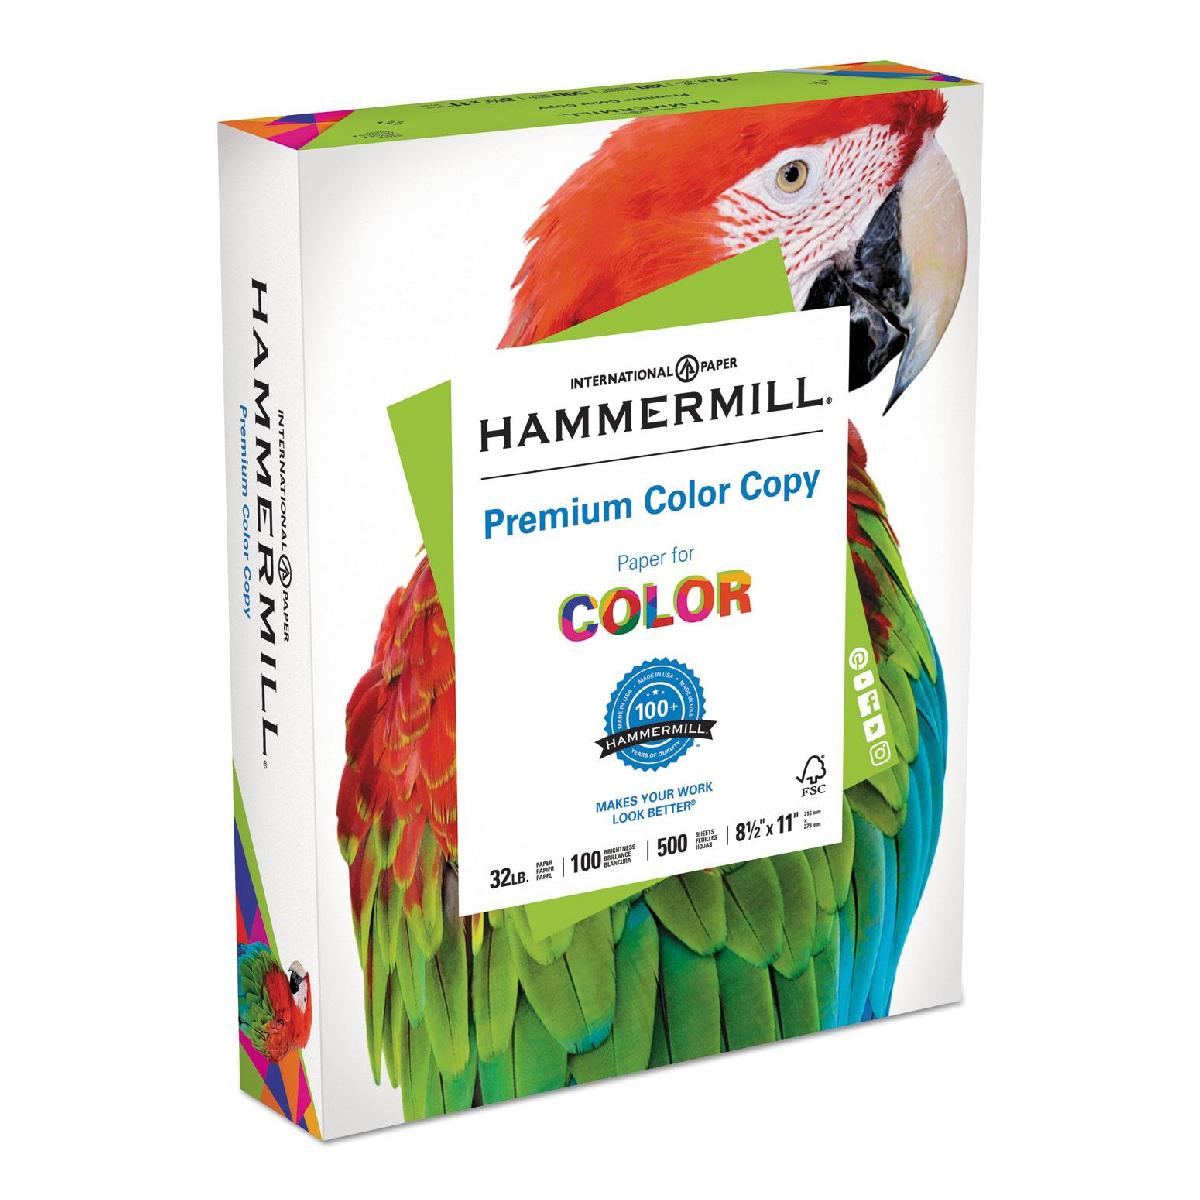 Hammermill® Premium Color Copy Paper 32 lb. 8.5x11 in. 500 Sheets per Ream